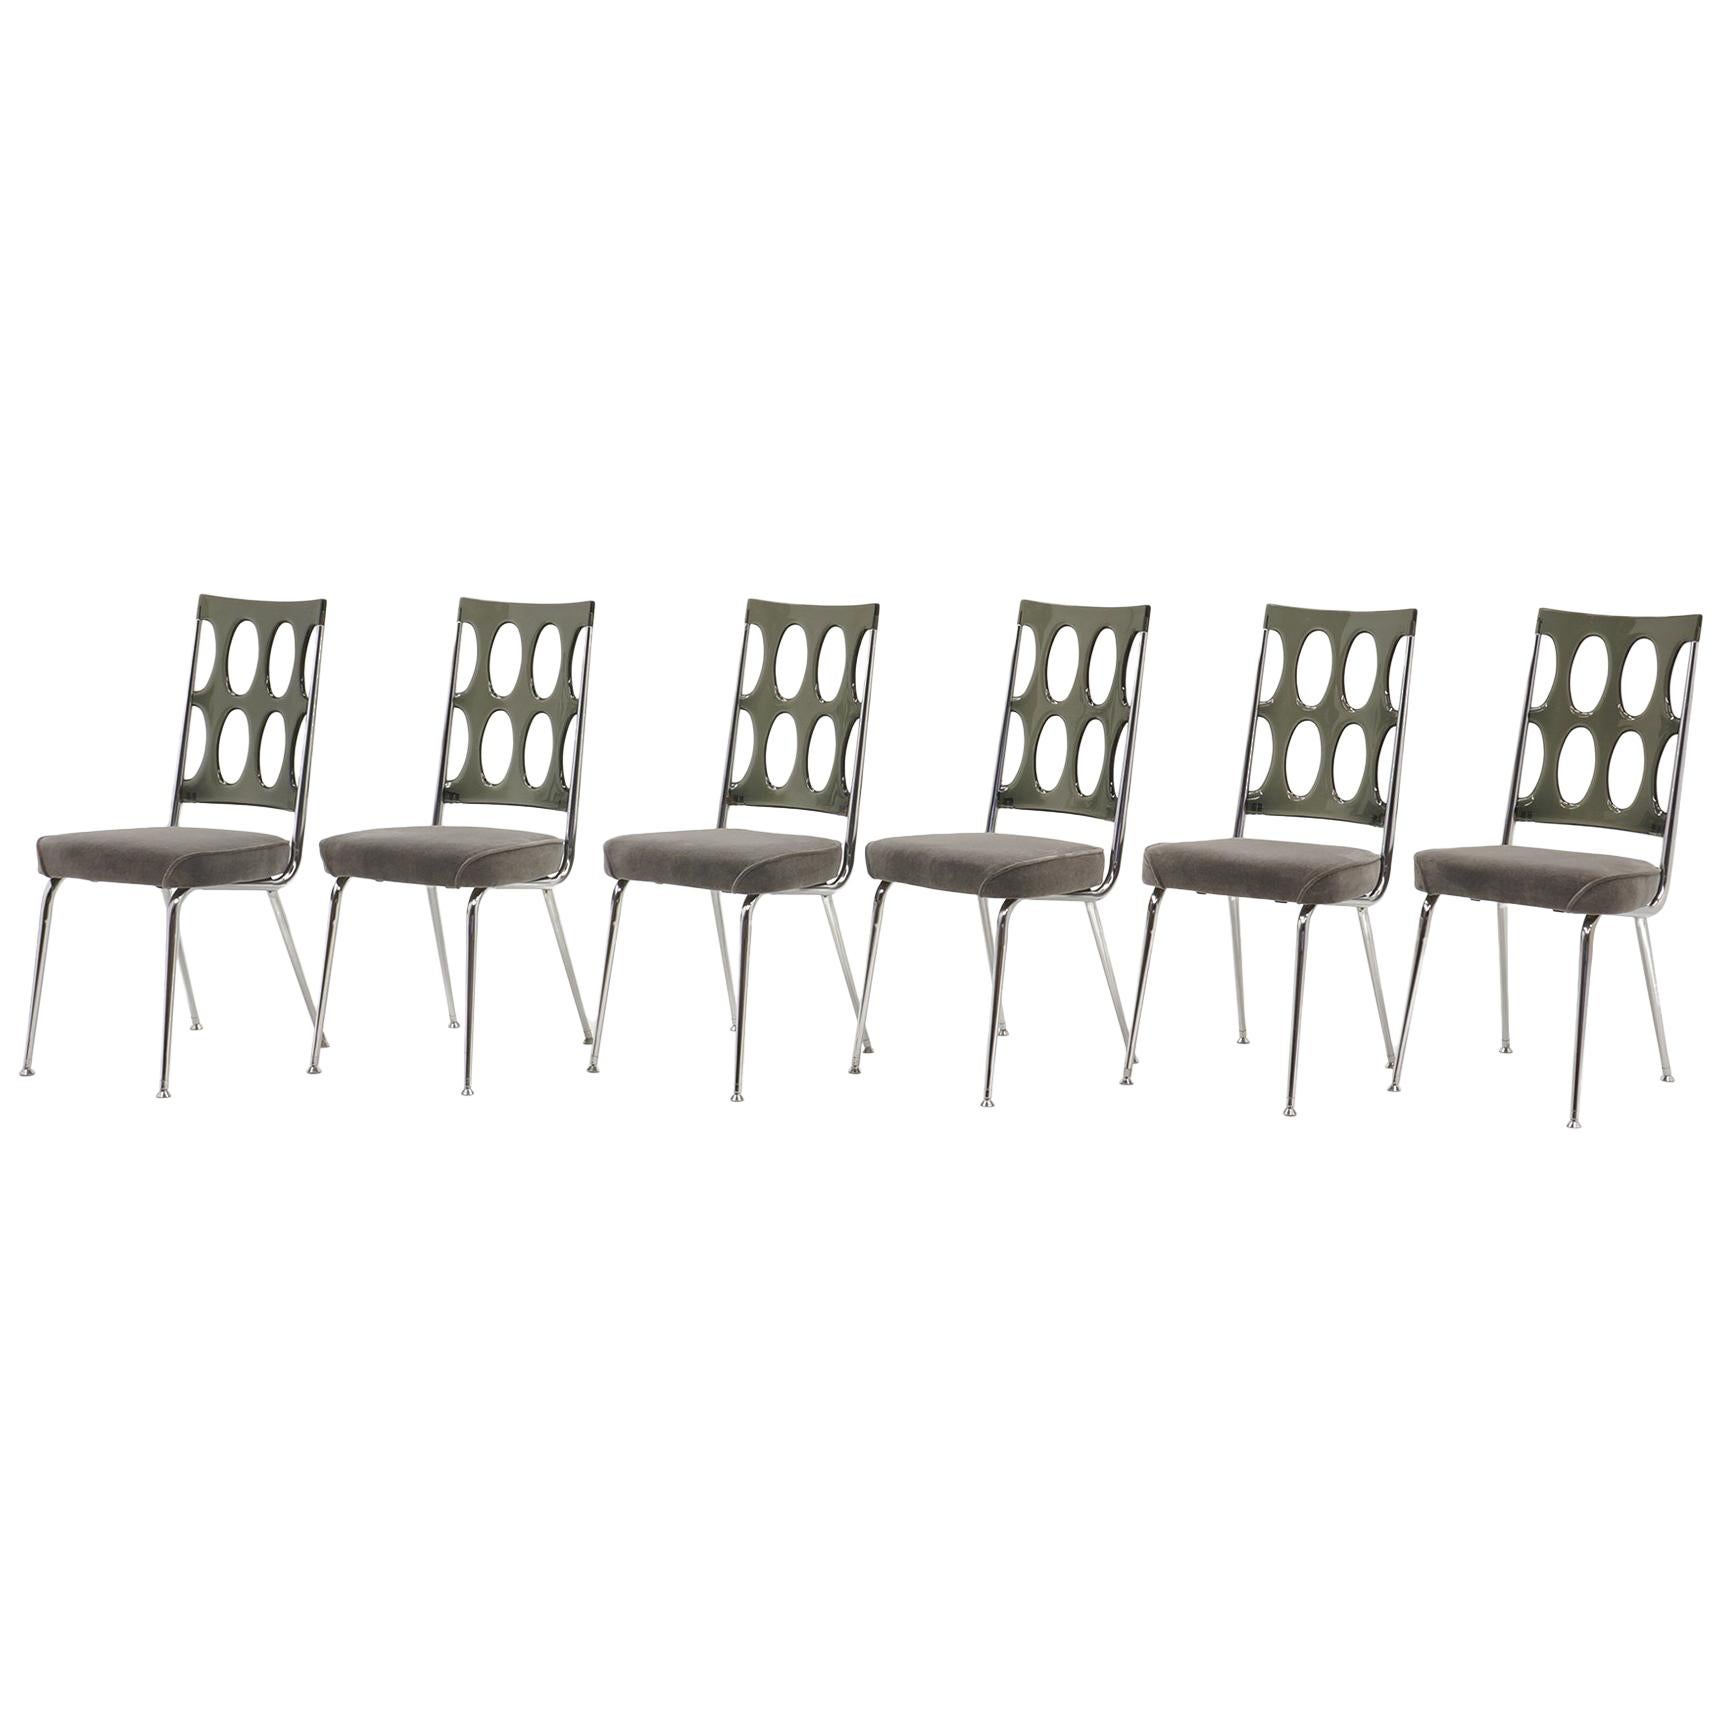 Set aus sechs verchromten Craft-Esszimmerstühlen, grauen Acrylrückenlehnen und neuen Samtsitzen